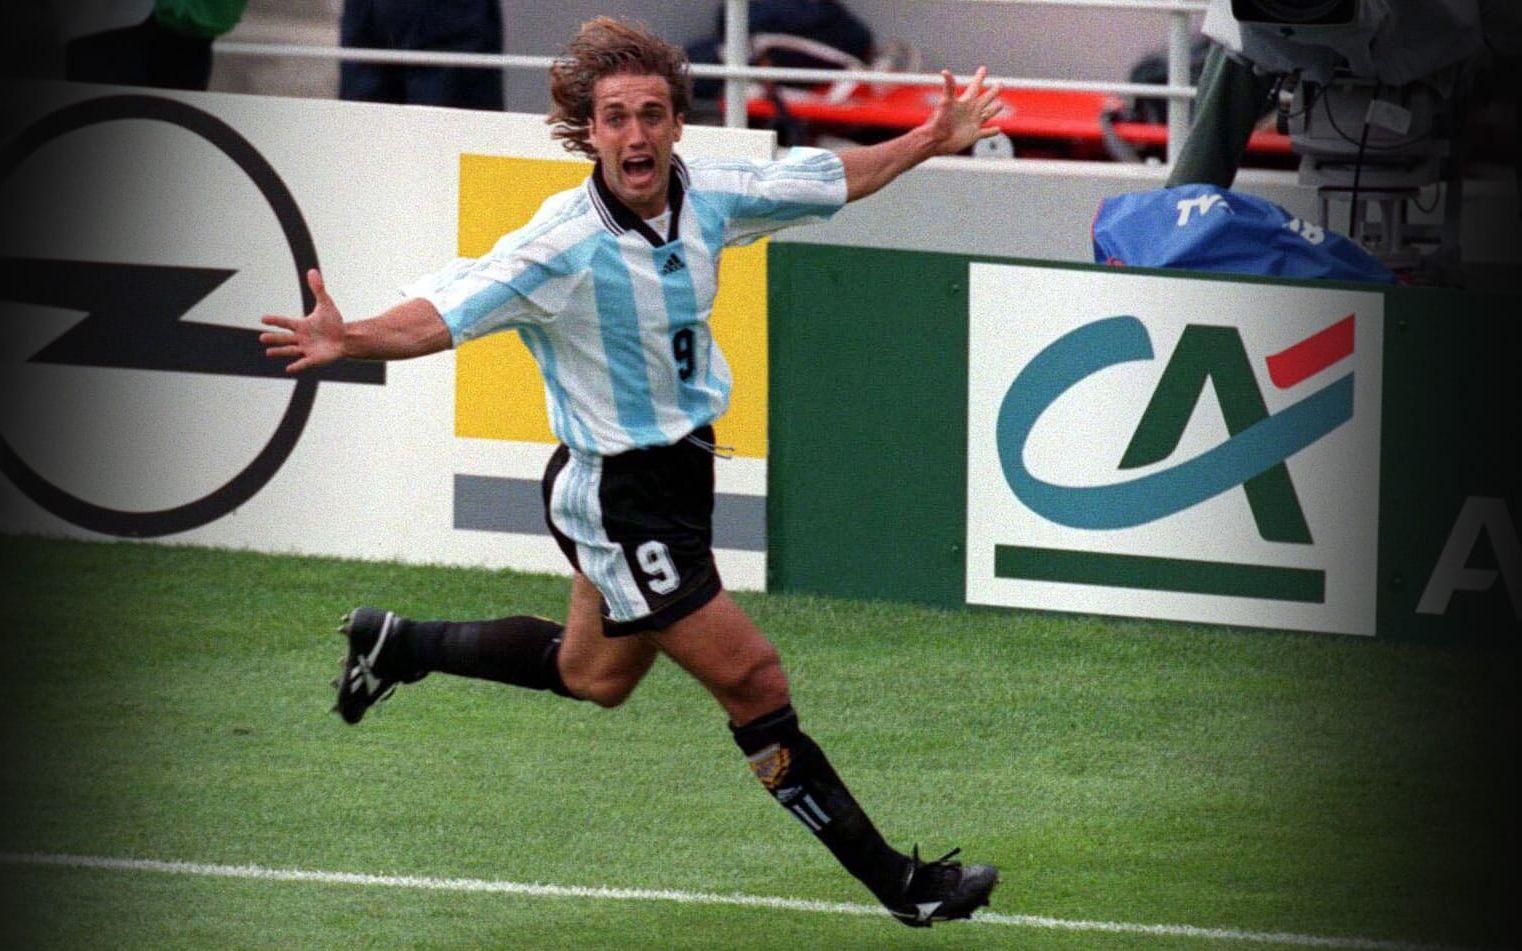 Argentina vann den första upplagan av Confederations cup 1992, som då hette King Fahd cup. Endast fyra lag var med och det krävdes bara två segrar för att Gabriel Batistuta & Co. skulle vinna turneringen. 7–1 i målskillnad säger att Argentina var värdigt mästarlag. Foto: Bildbyrån